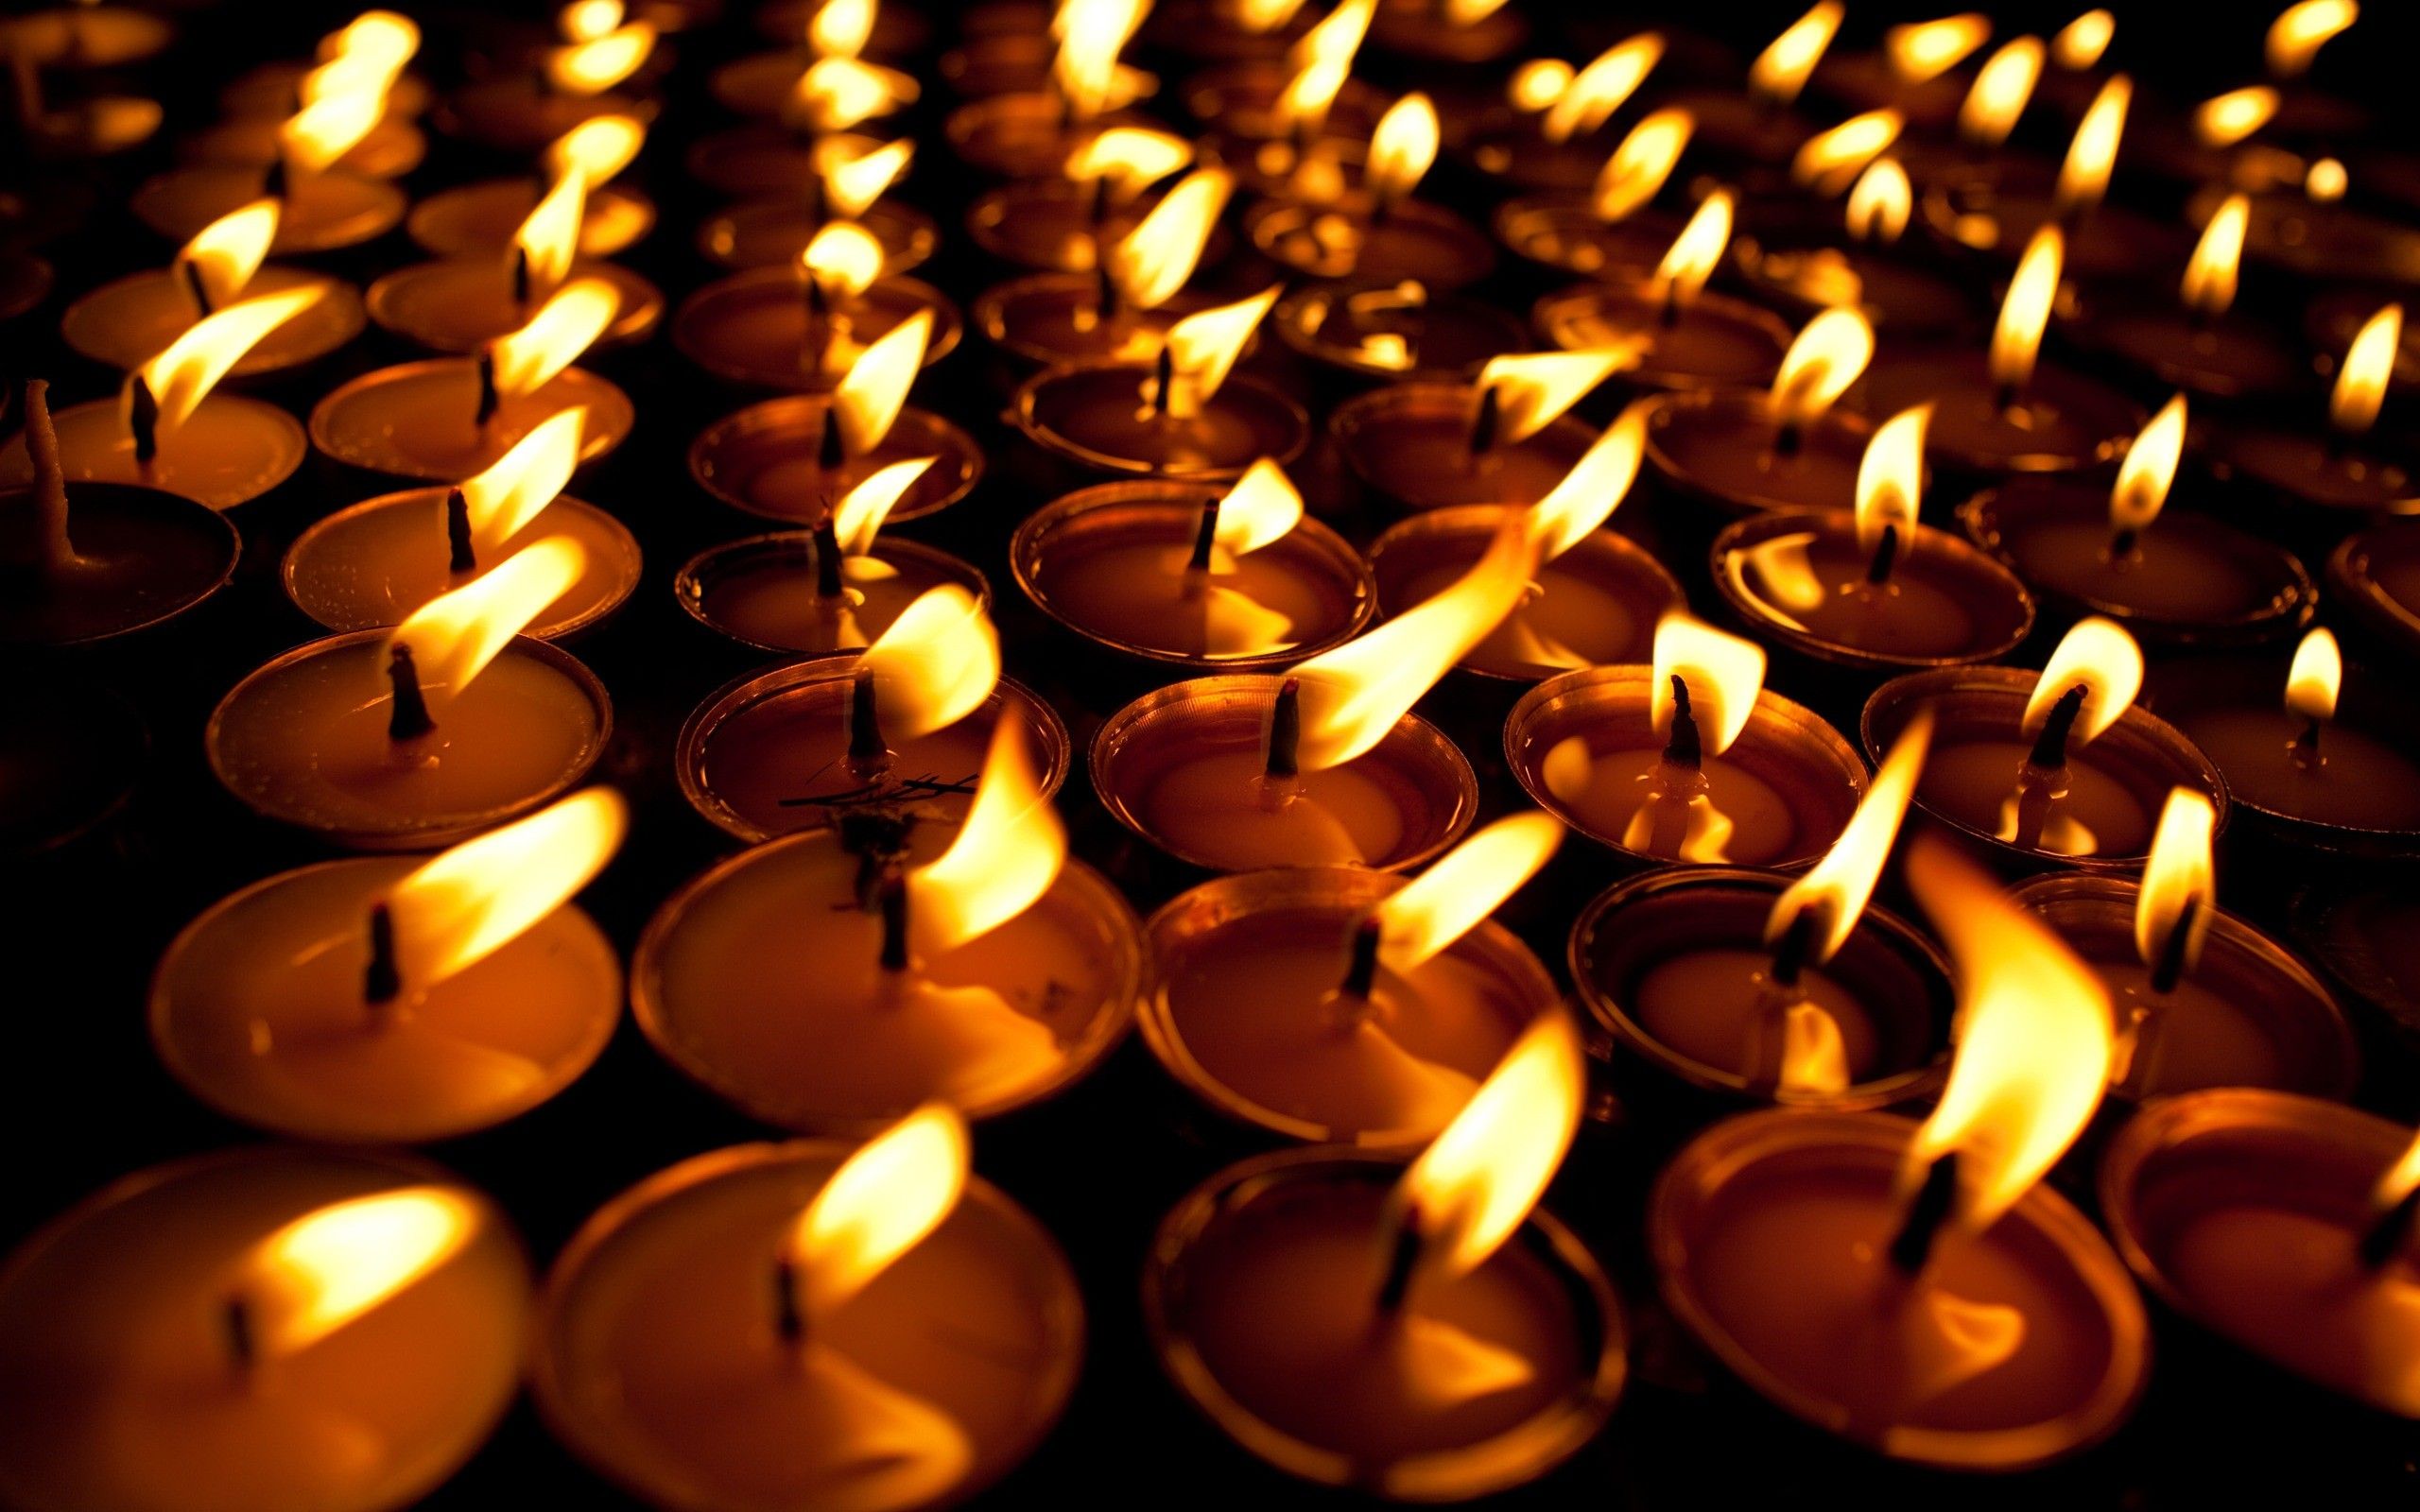 دانلود رایگان عکس تعداد زیادی شمع روشن تسلیت فول اچ دی  